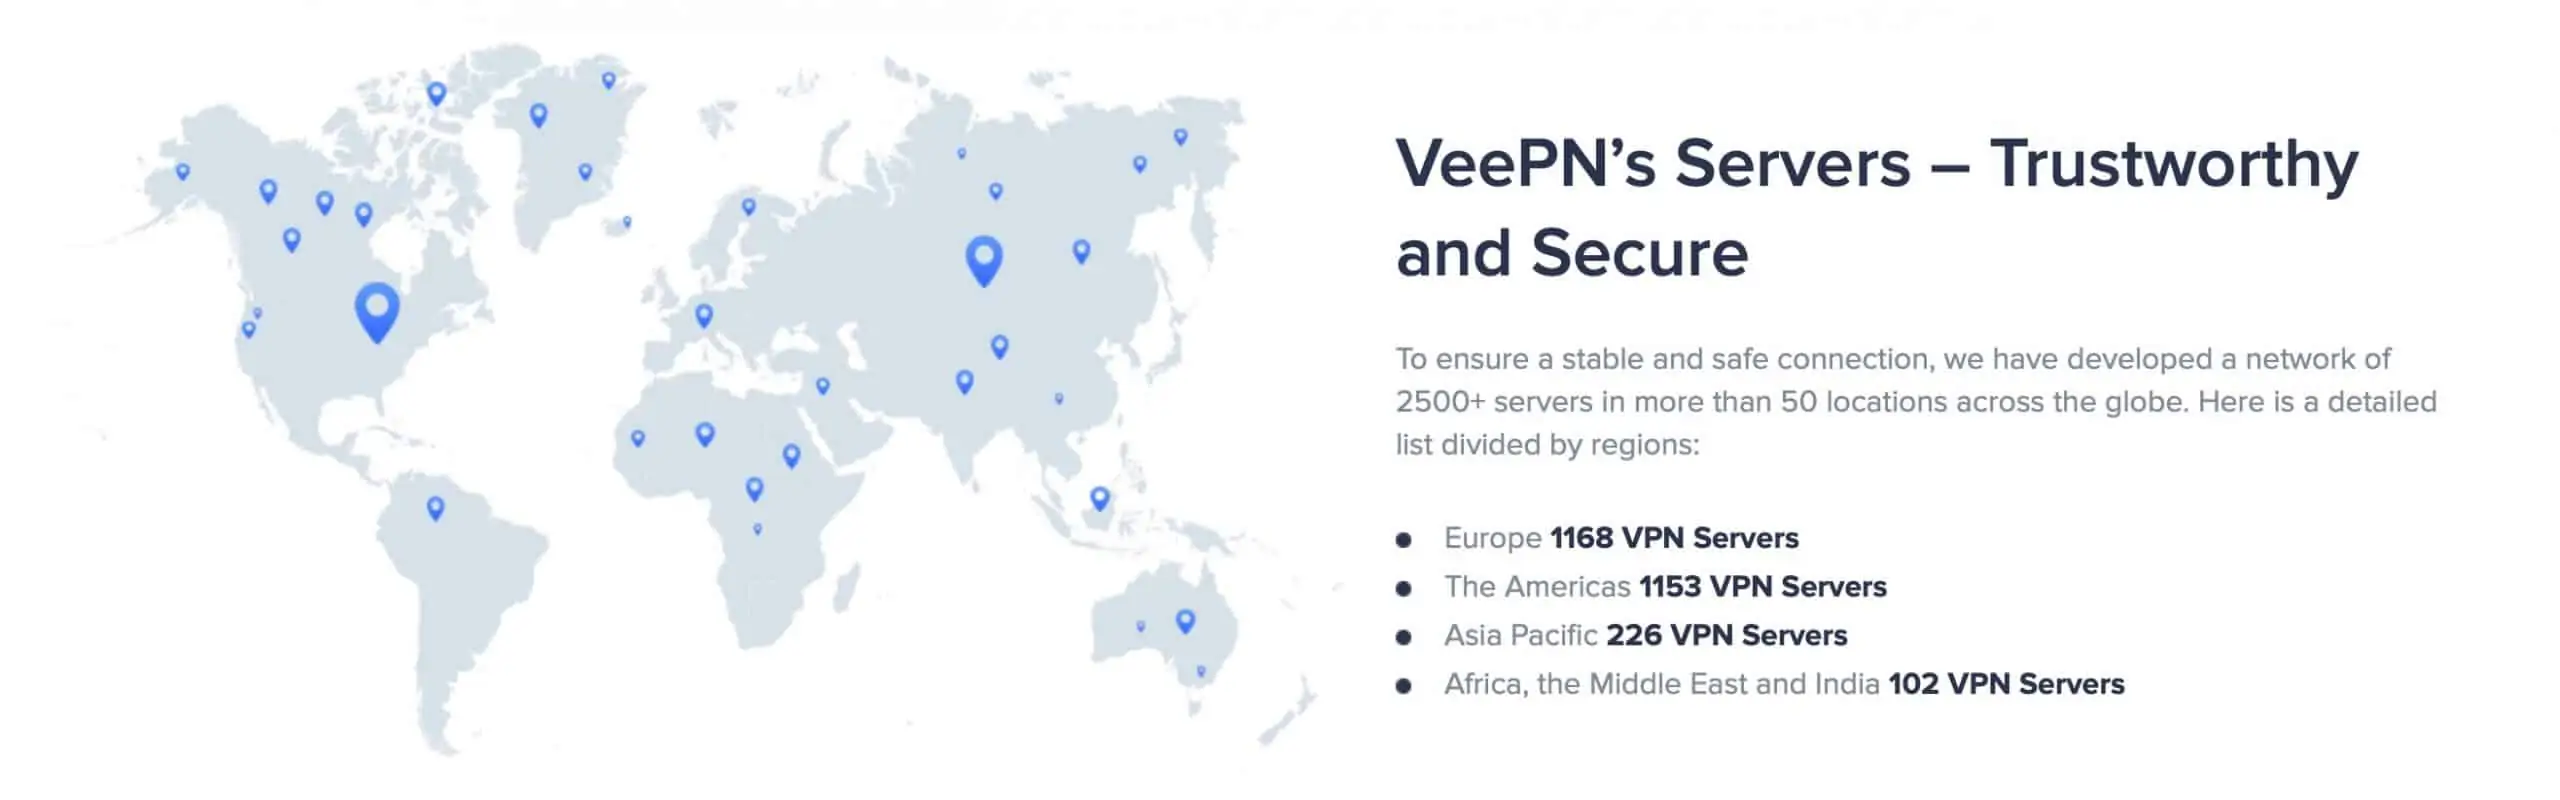 VeePN - Servers